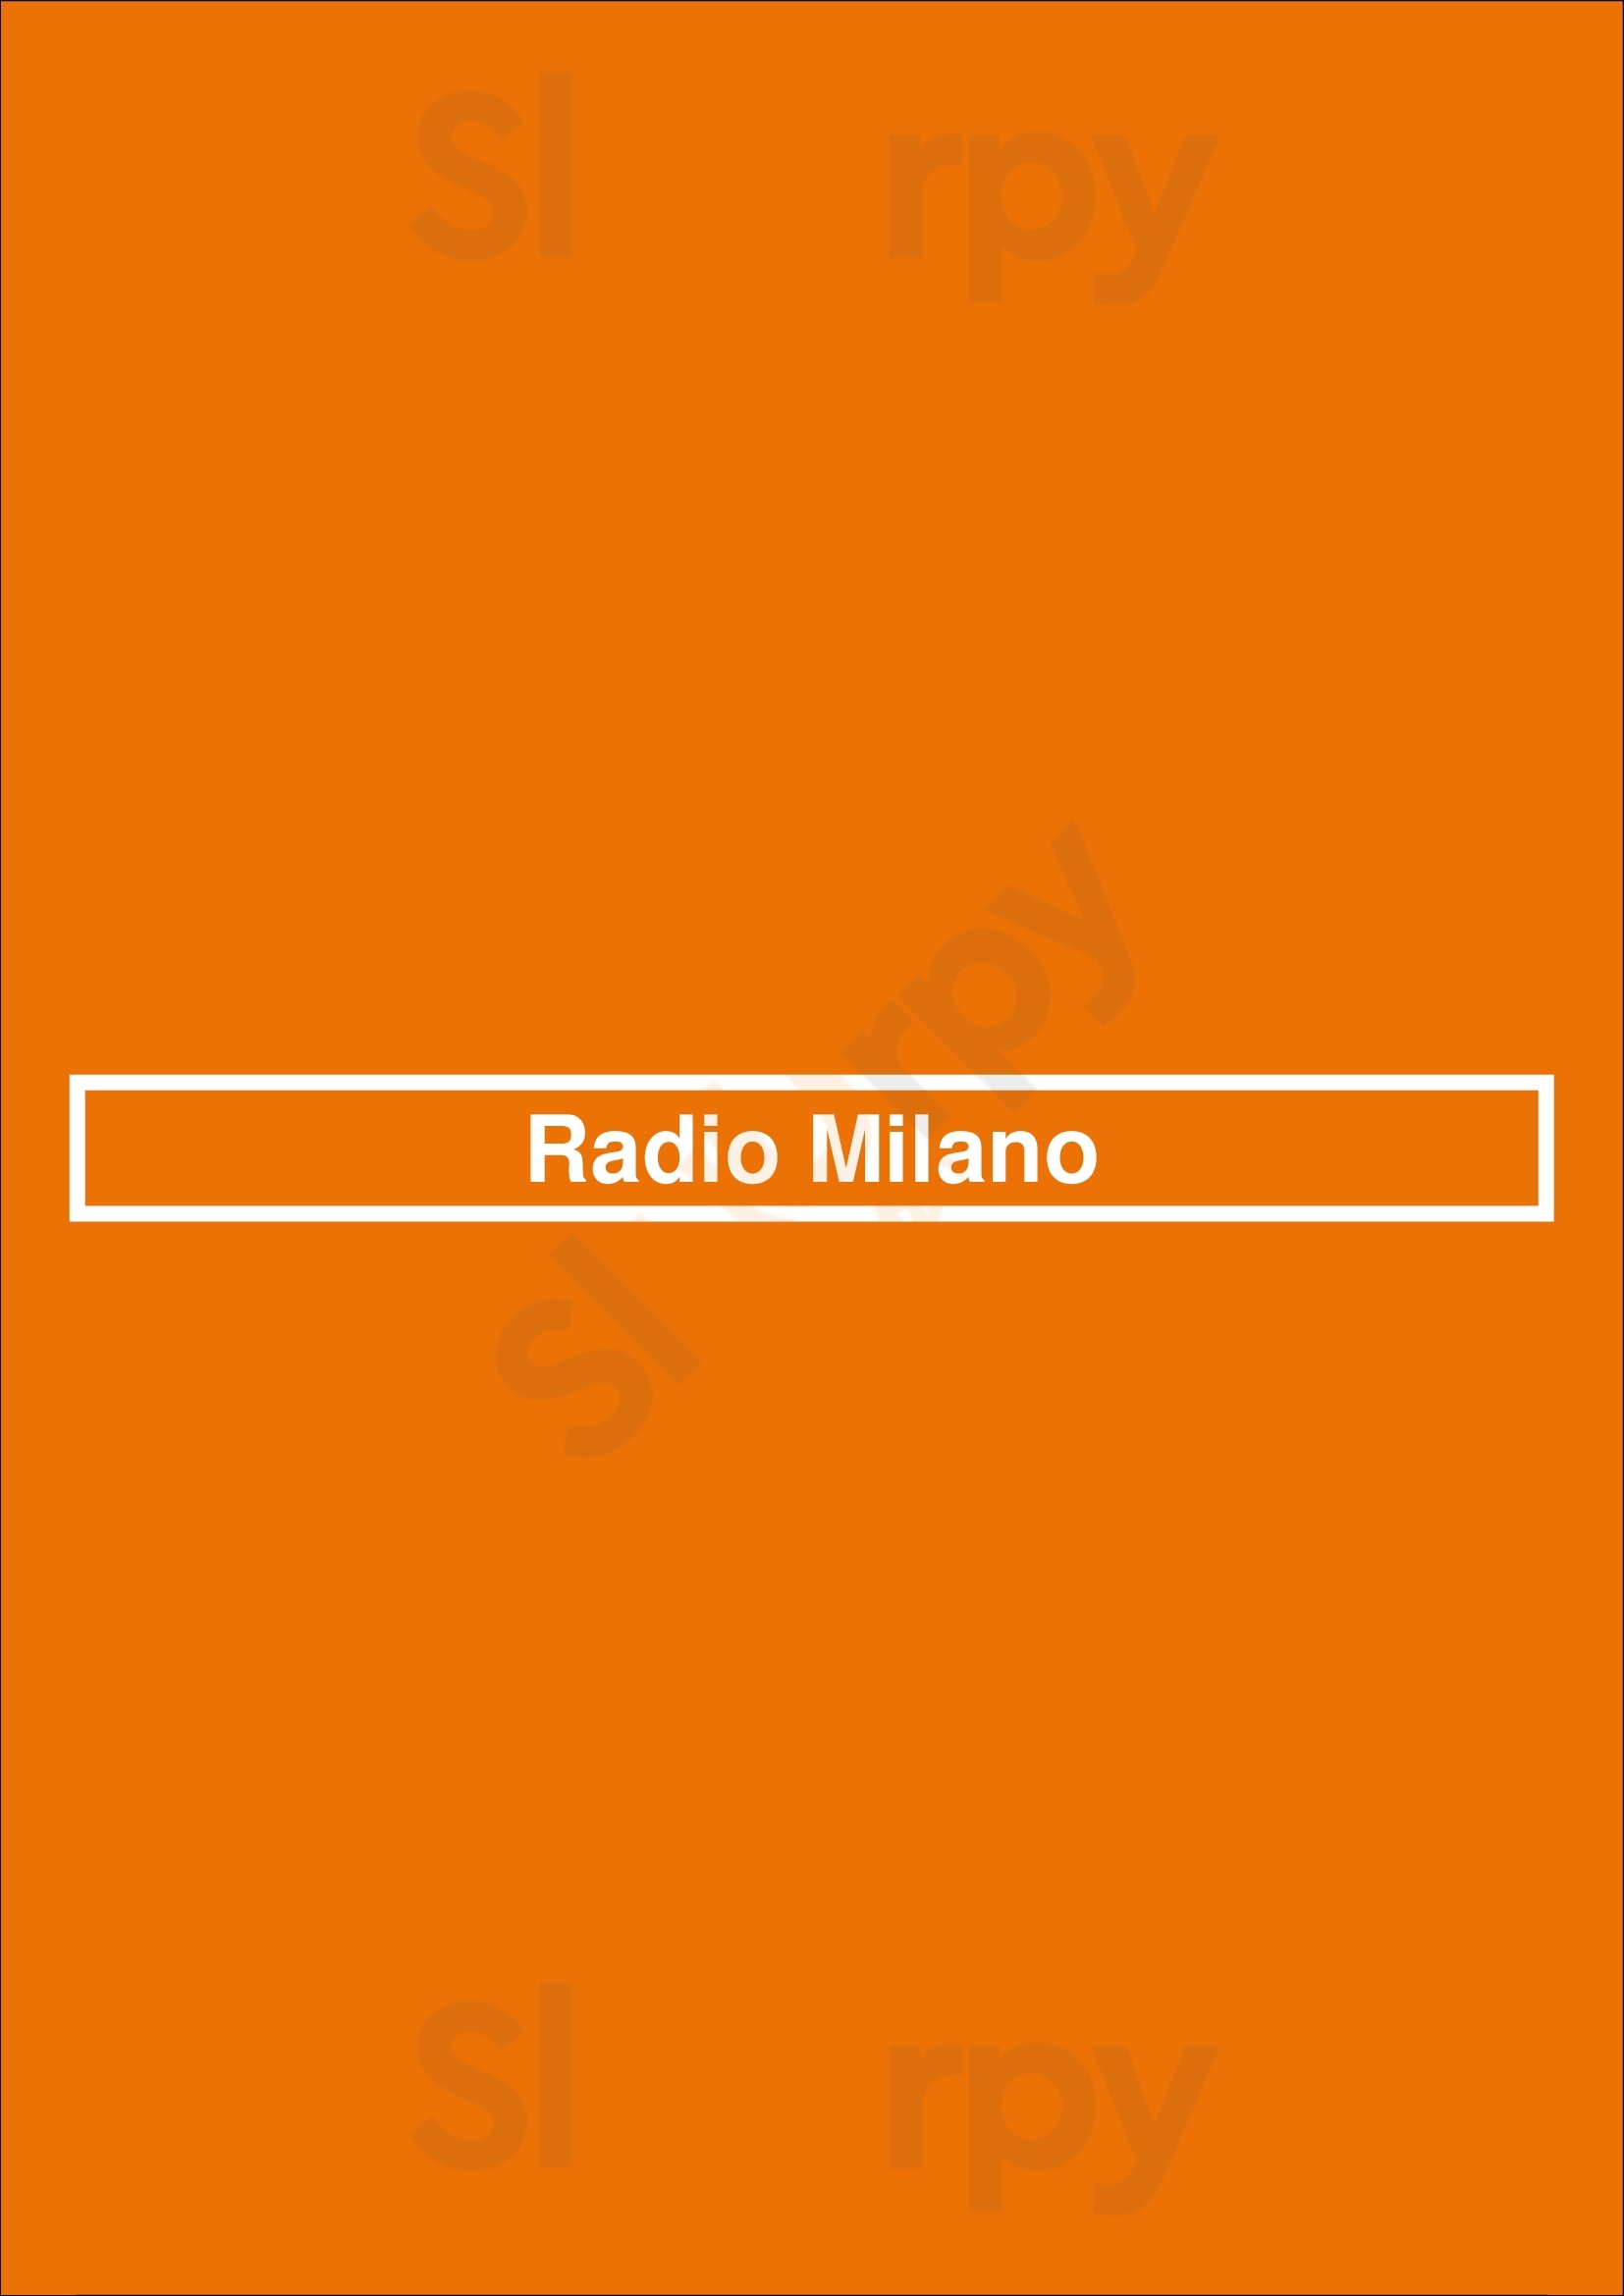 Radio Milano Houston Menu - 1